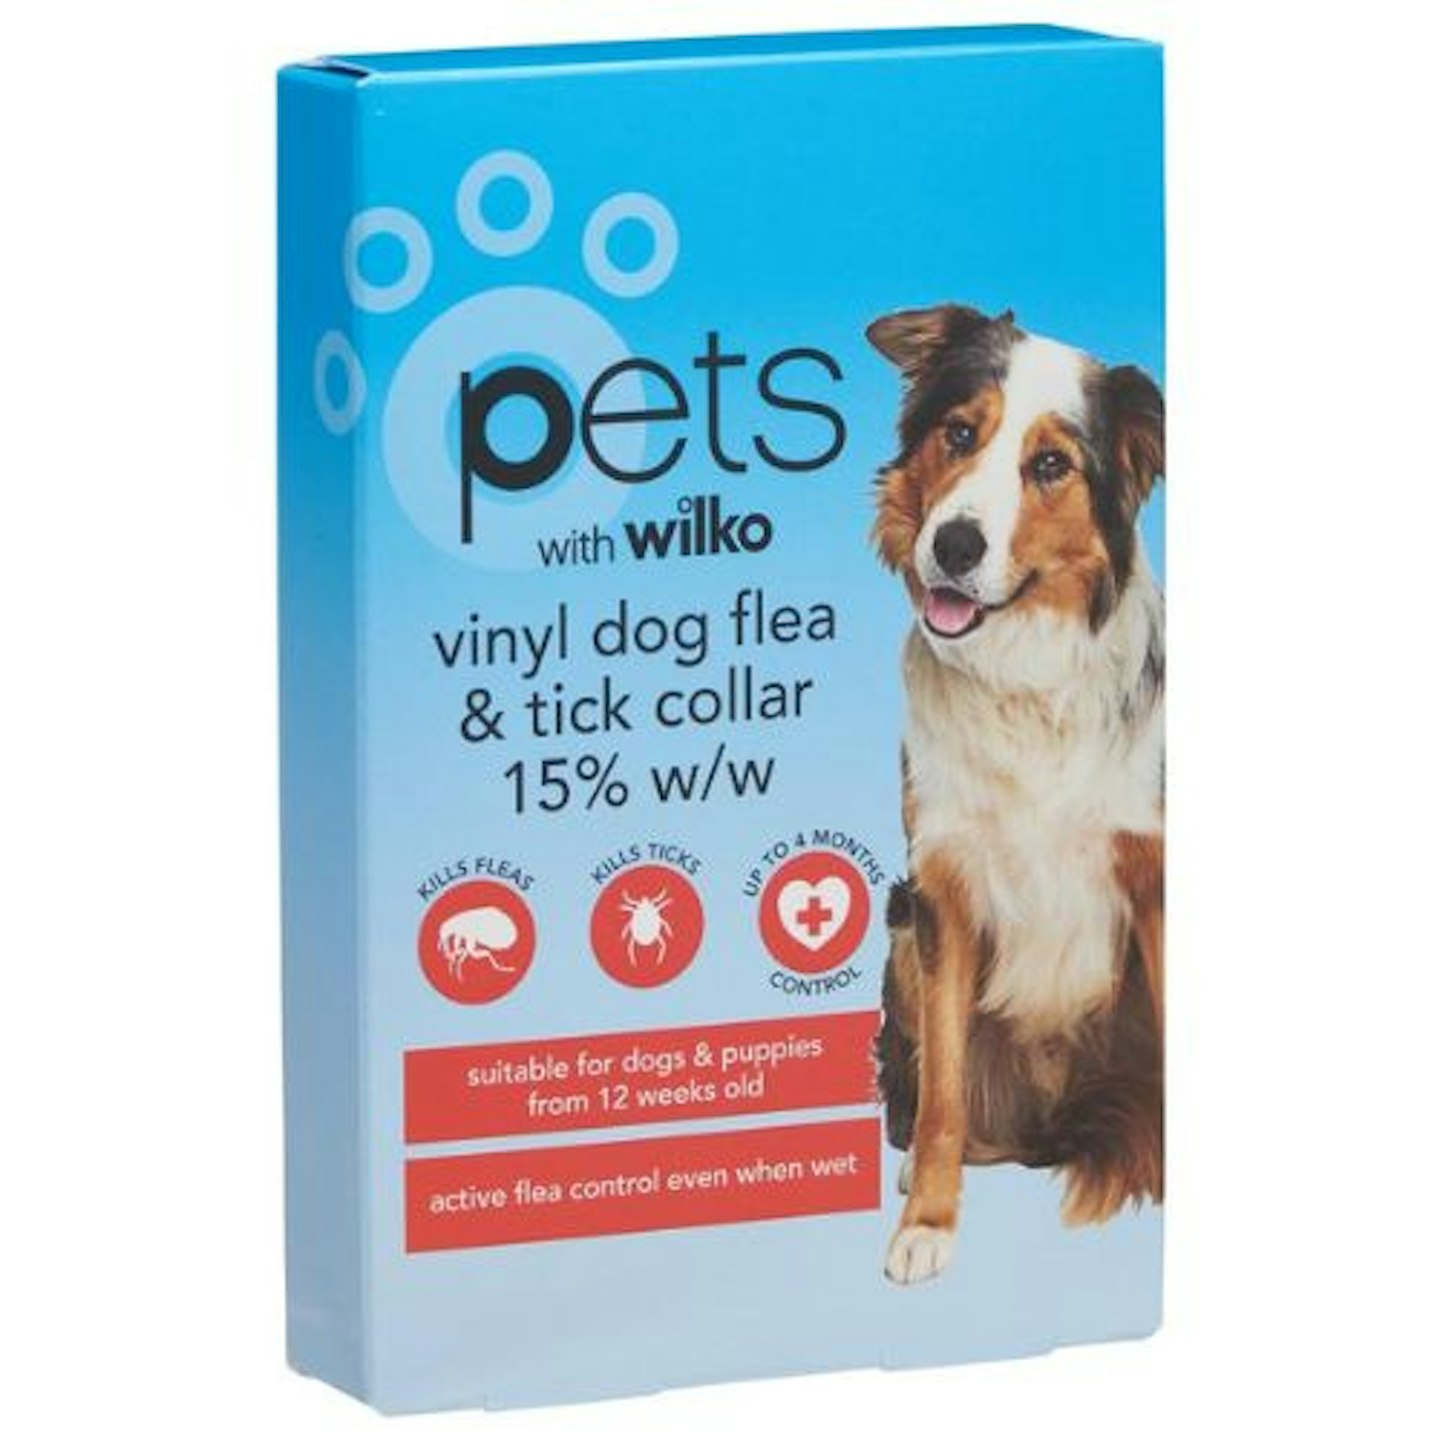 Wilko Vinyl Pet Flea and Tick Collar